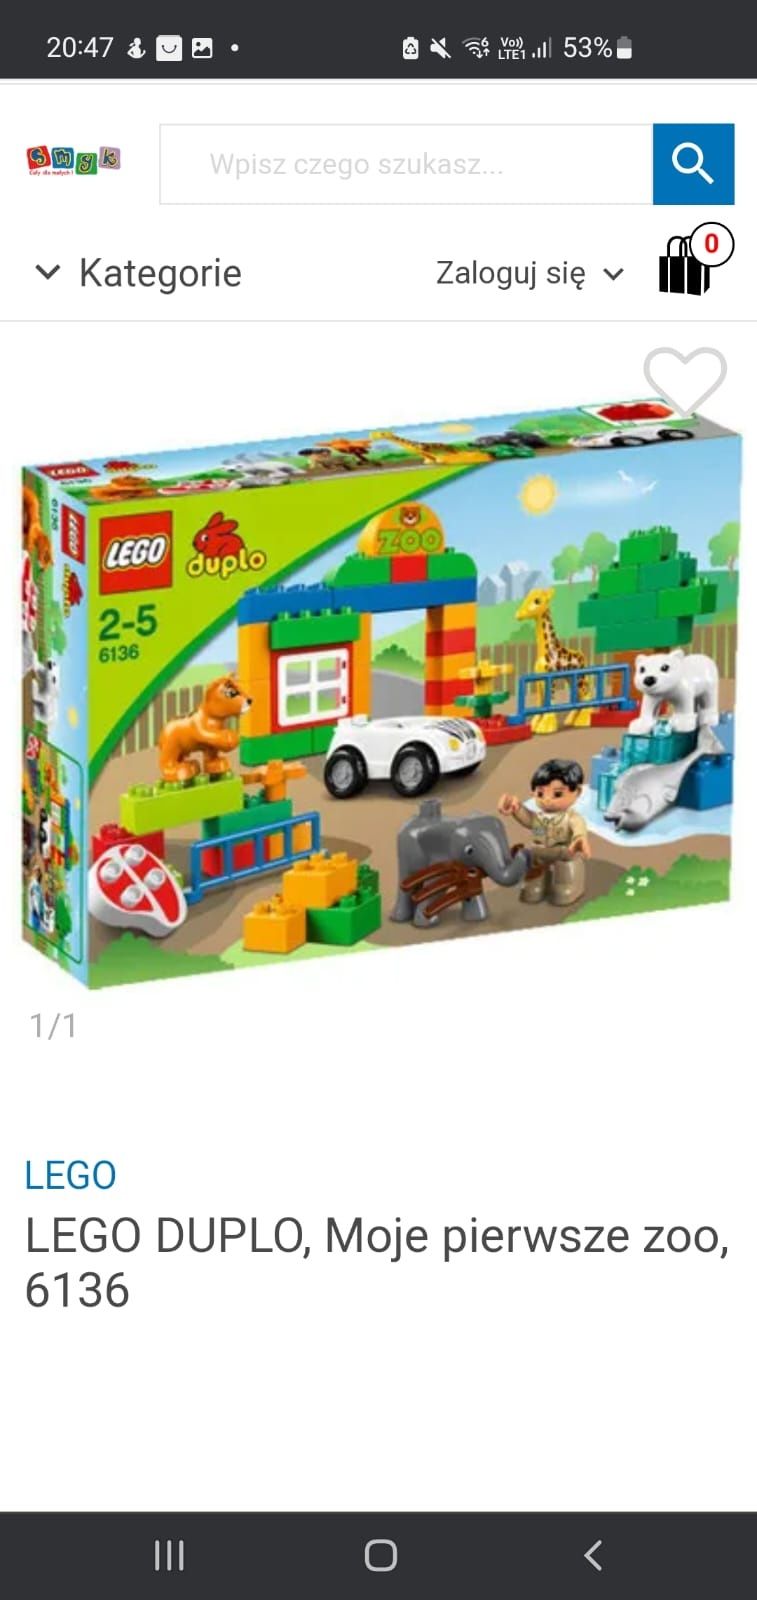 Lego duplo 6136 moje pierwsze zoo